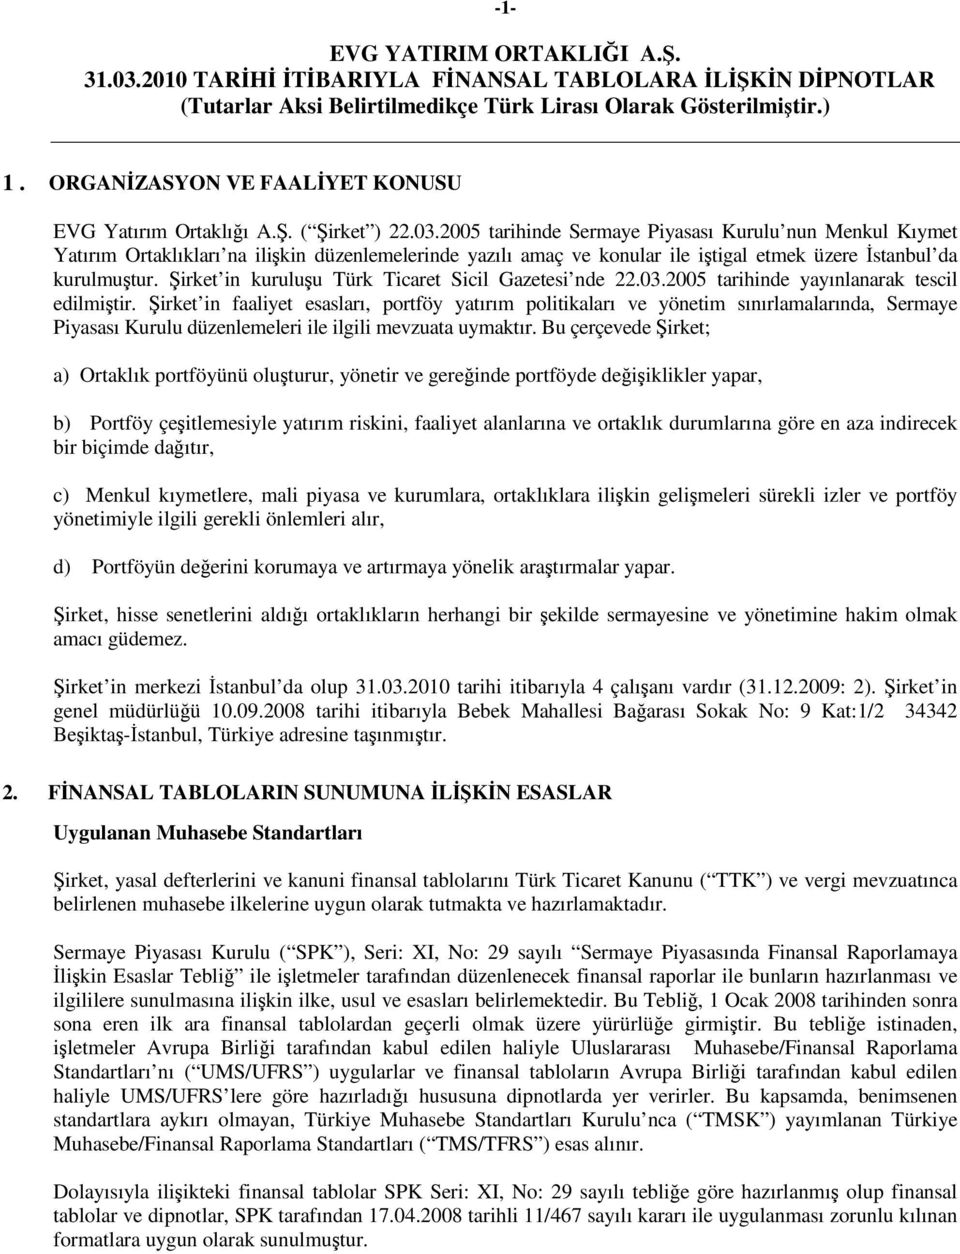 irket in kuruluu Türk Ticaret Sicil Gazetesi nde 22.03.2005 tarihinde yayınlanarak tescil edilmitir.